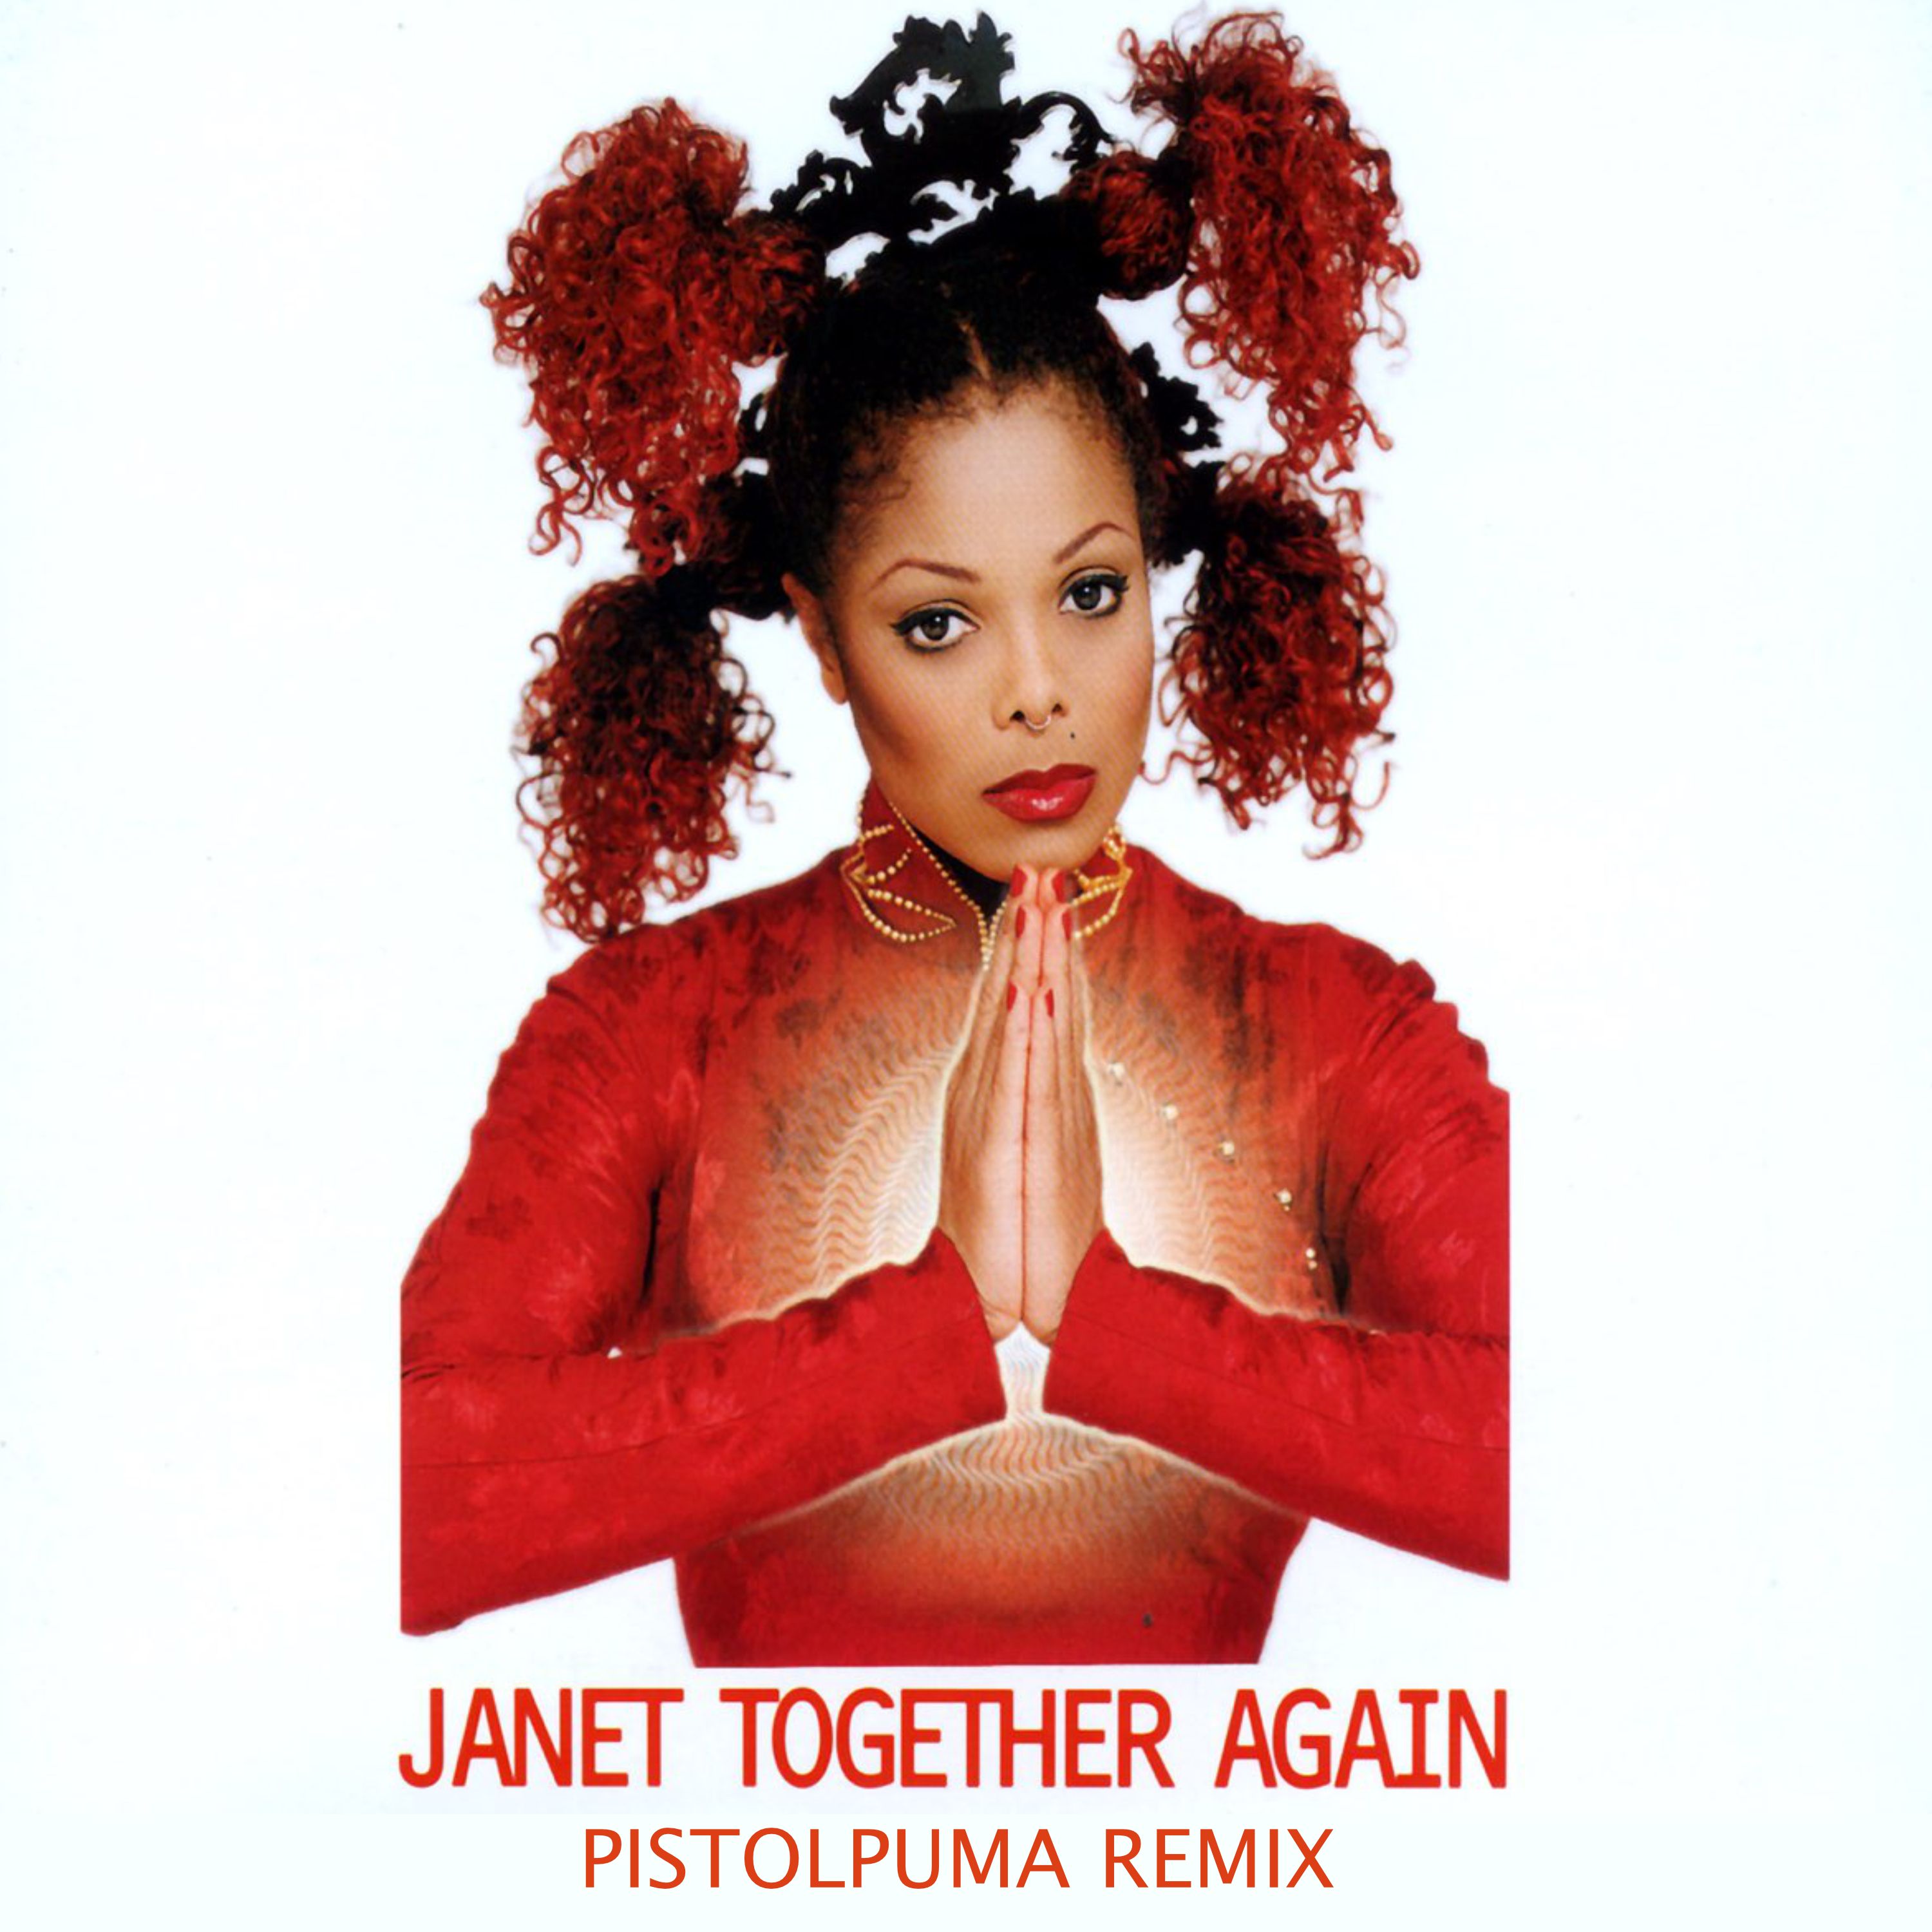 ဒေါင်းလုပ် Janet - Together Again (Pistolpuma Remix)